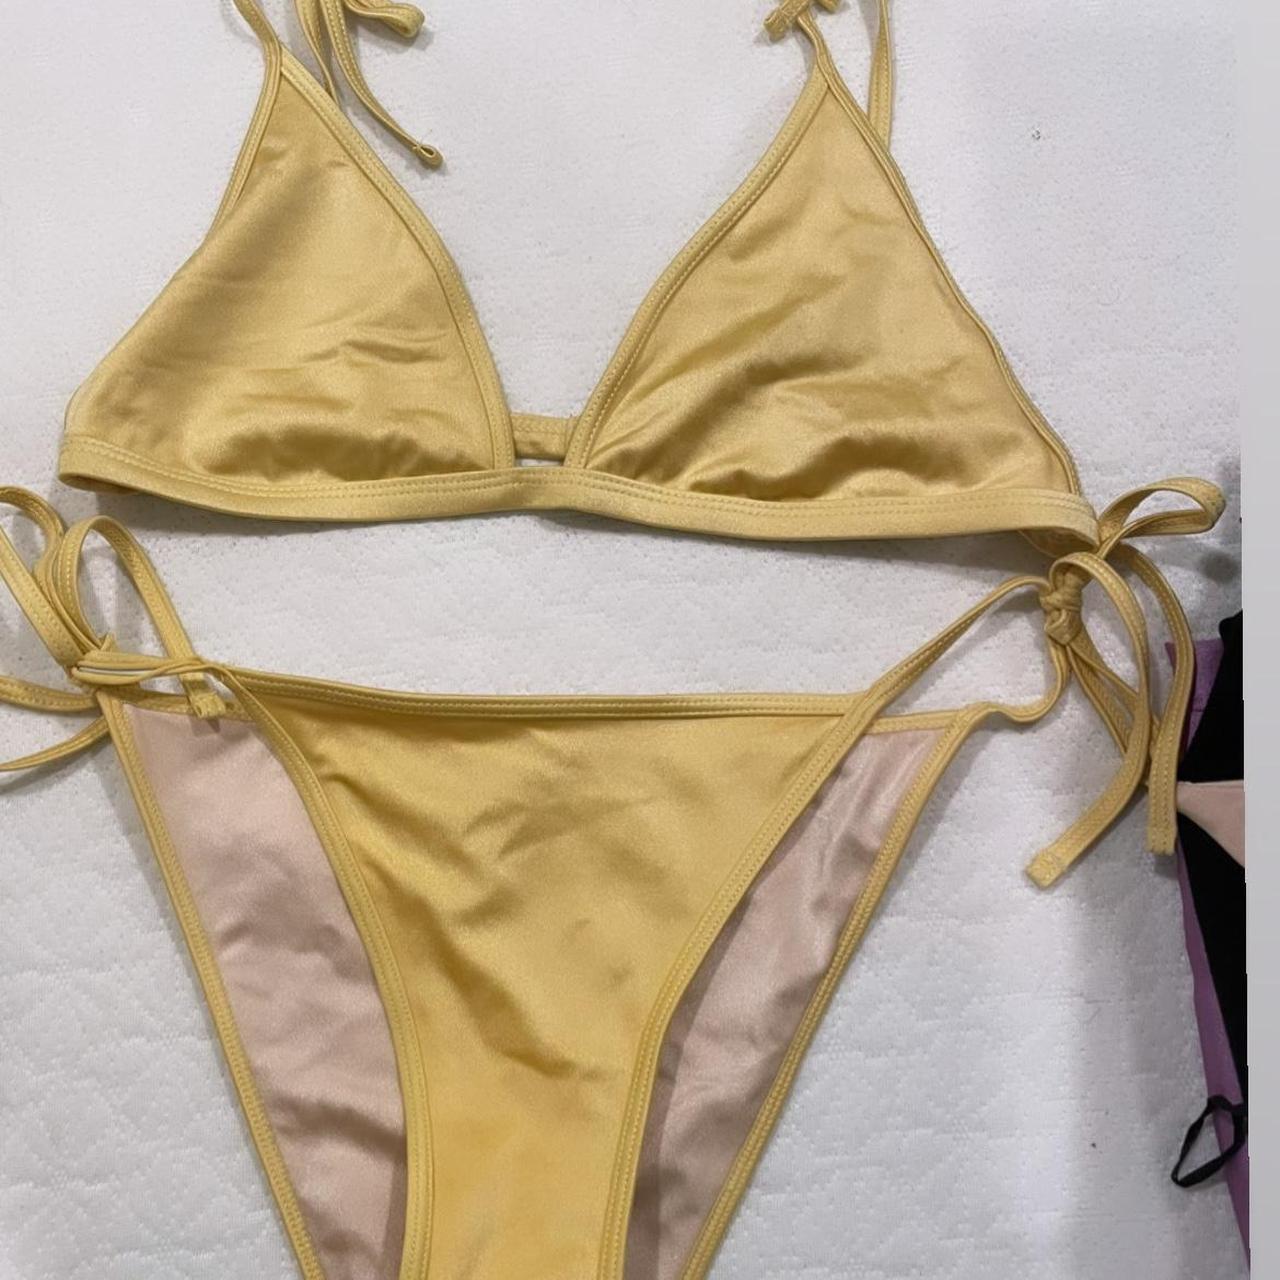 LA Hearts by PacSun Women's Yellow Swimsuit-one-piece | Depop